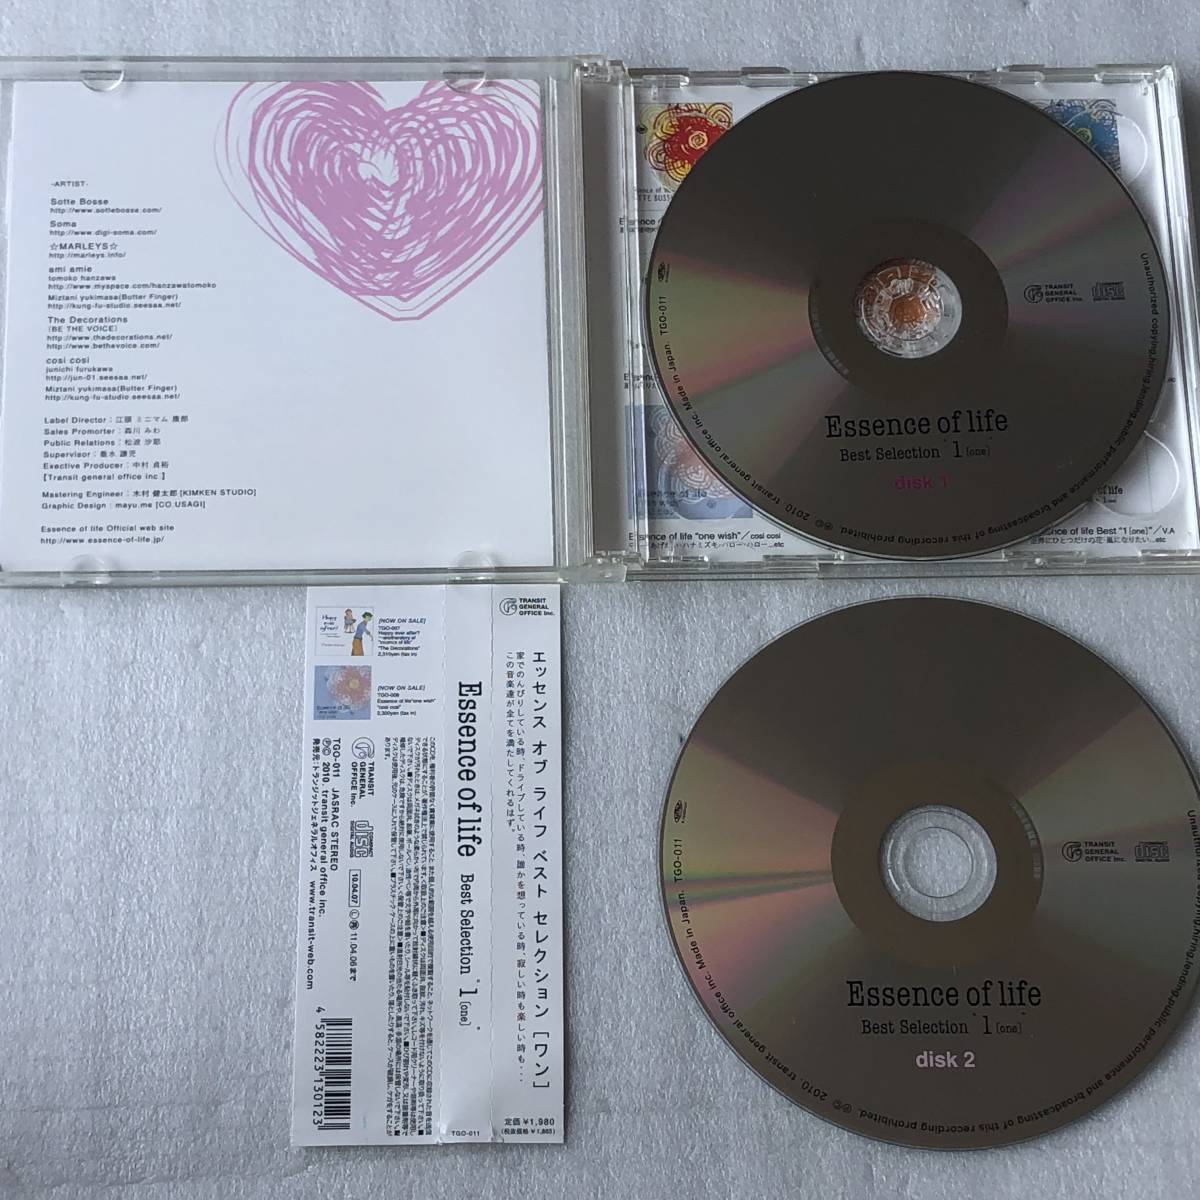 中古CD V.A/Essence of life best selection “1(ONE)"(2CD) オムニバス盤(2010年 TGO-011) 日本産,J-POP系_画像3